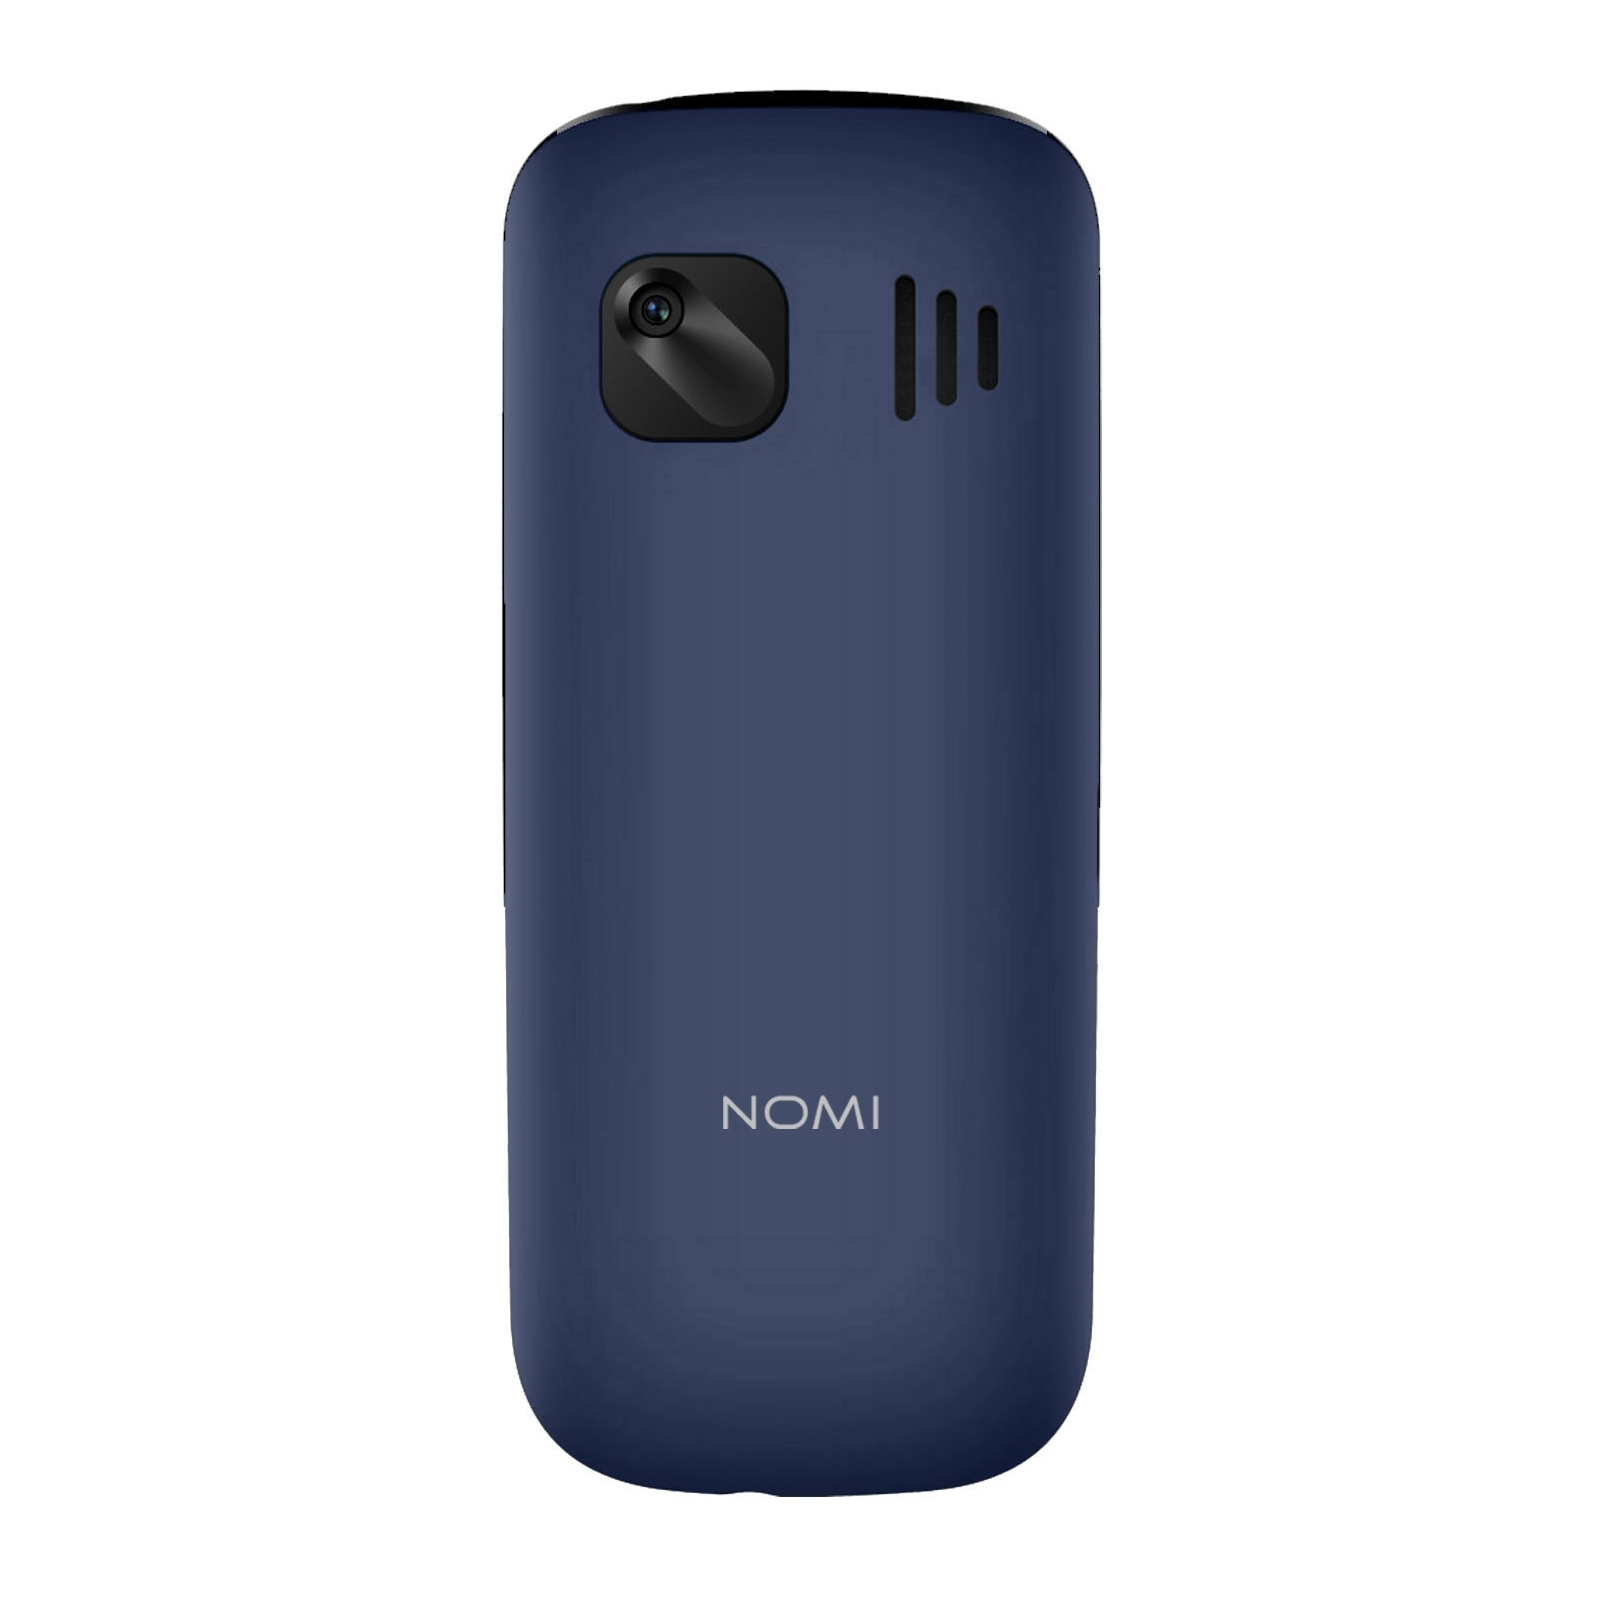 Мобильный телефон Nomi i1890 Grey изображение 3